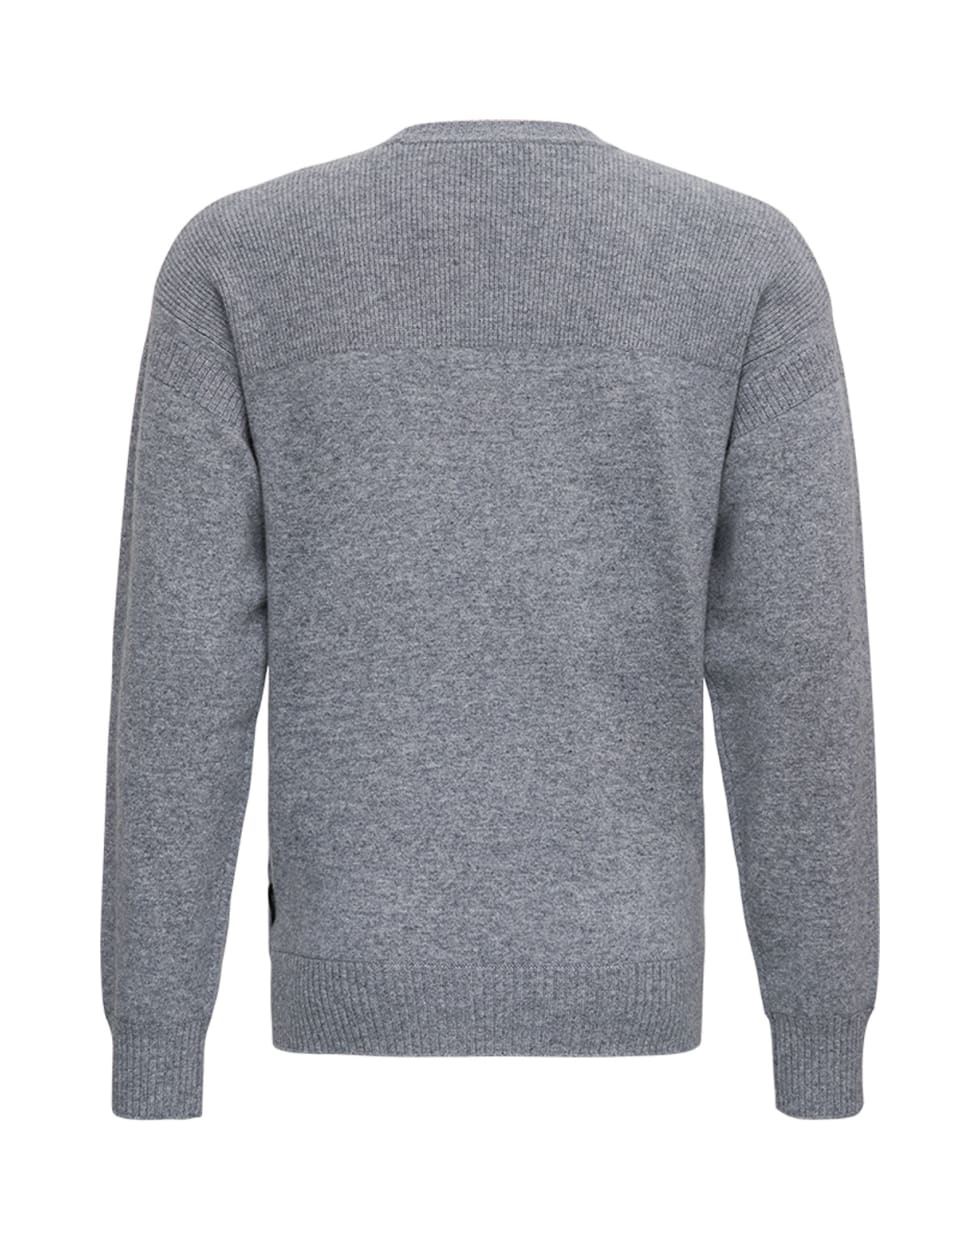 Z Zegna Grey Cashmere Crew Neck Sweater - Grey